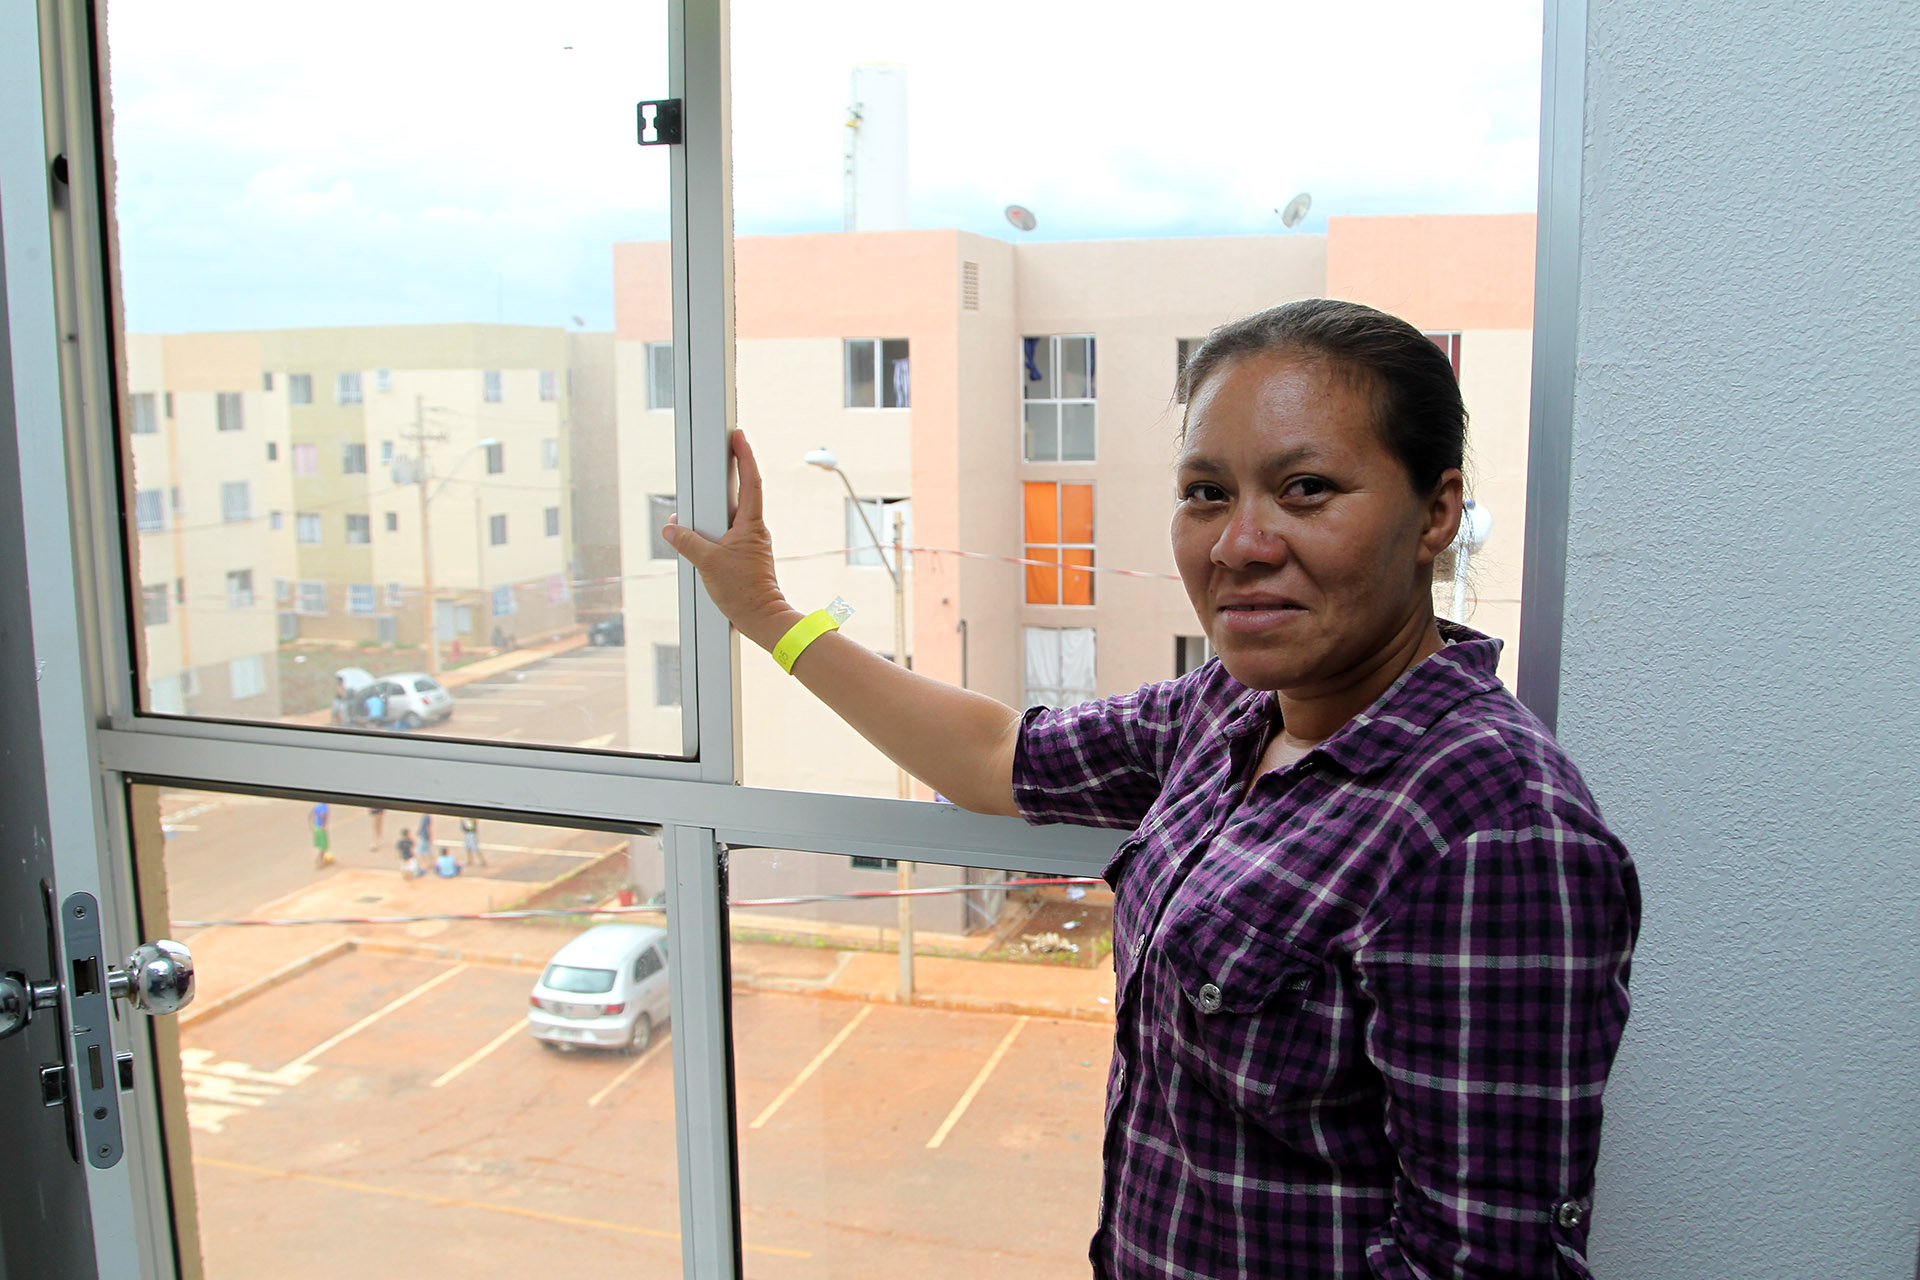 Ana Cristina Nascimento, de 36 anos, vive a concretização de um sonho. Inscrita na lista da Companhia de Desenvolvimento Habitacional do DF (Codhab) desde 2014, ela recebeu a chave de seu apartamento, no Paranoá Parque, em julho deste ano.